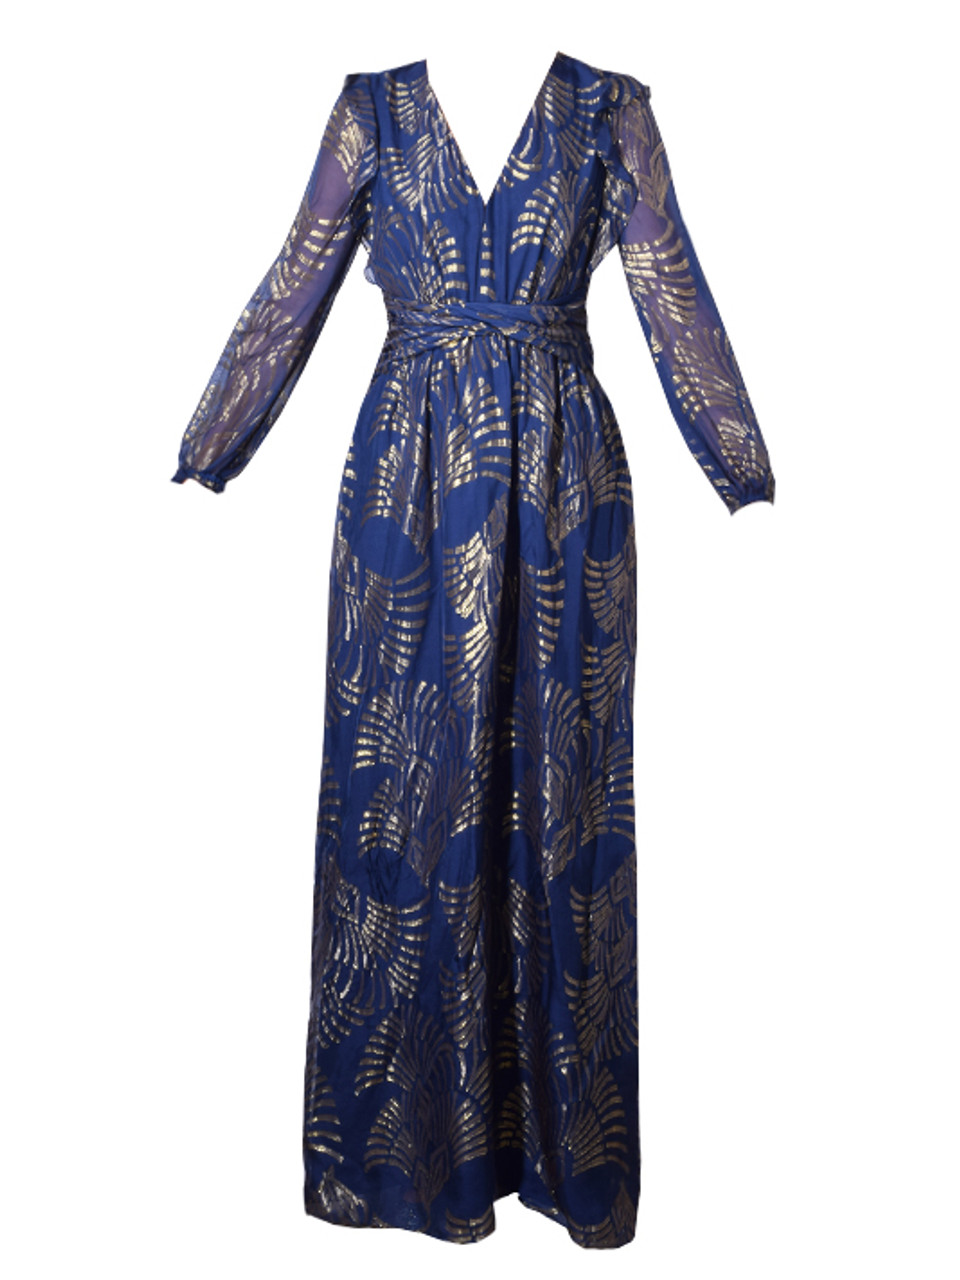 Rachel Zoe Lennon Maxi Dress In Royal Blue/Gold